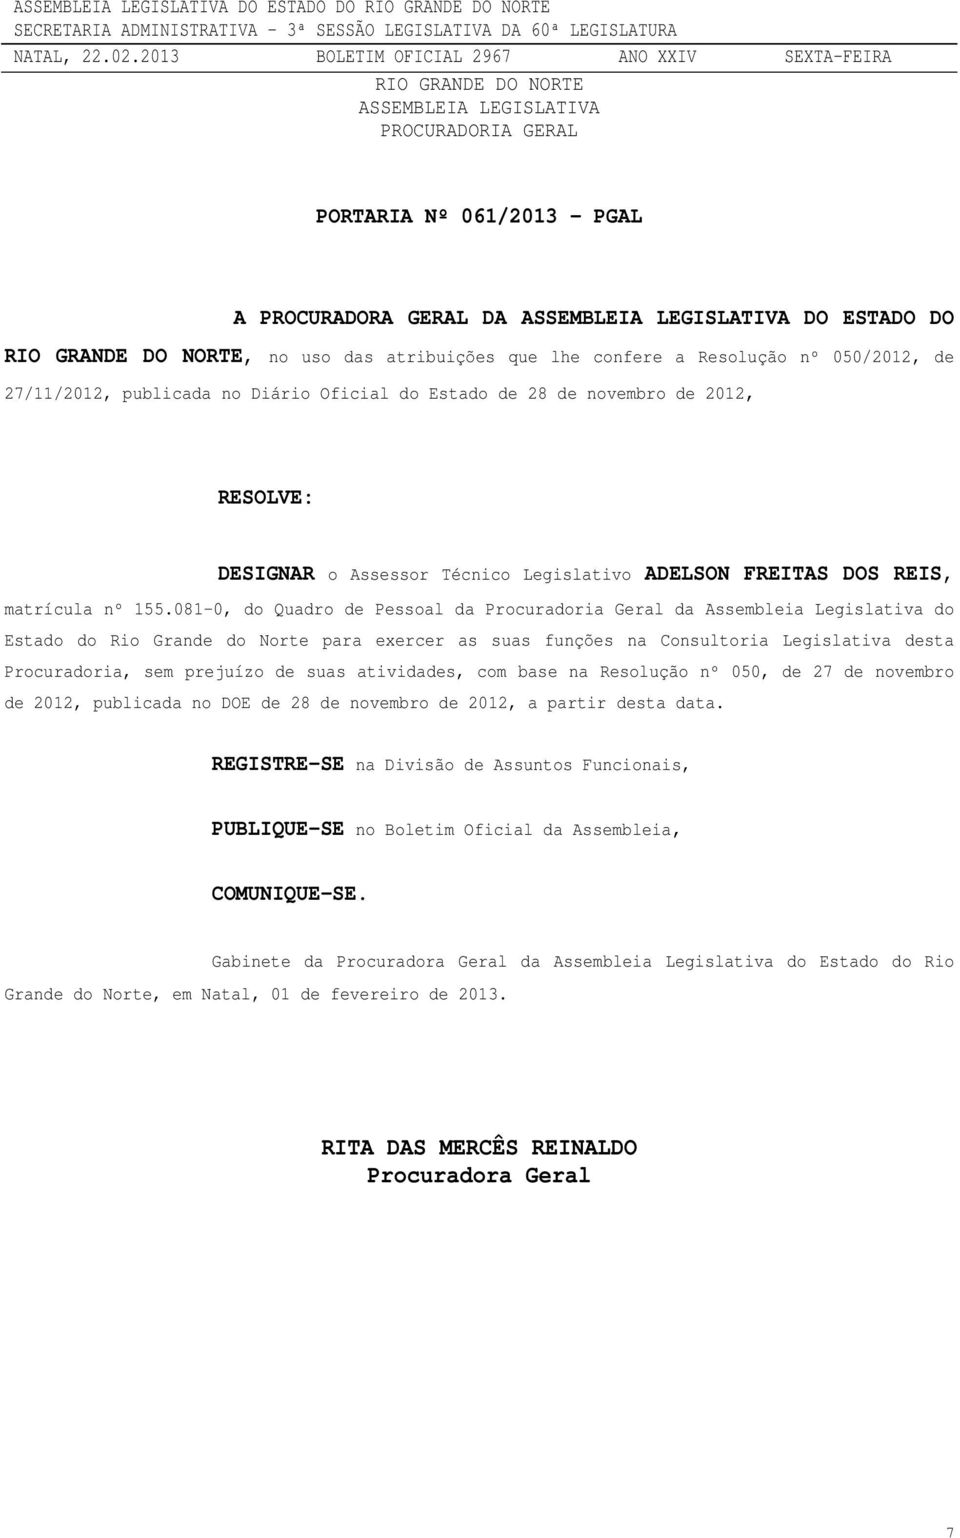 081-0, do Quadro de Pessoal da Procuradoria Geral da Assembleia Legislativa do Estado do Rio Grande do Norte para exercer as suas funções